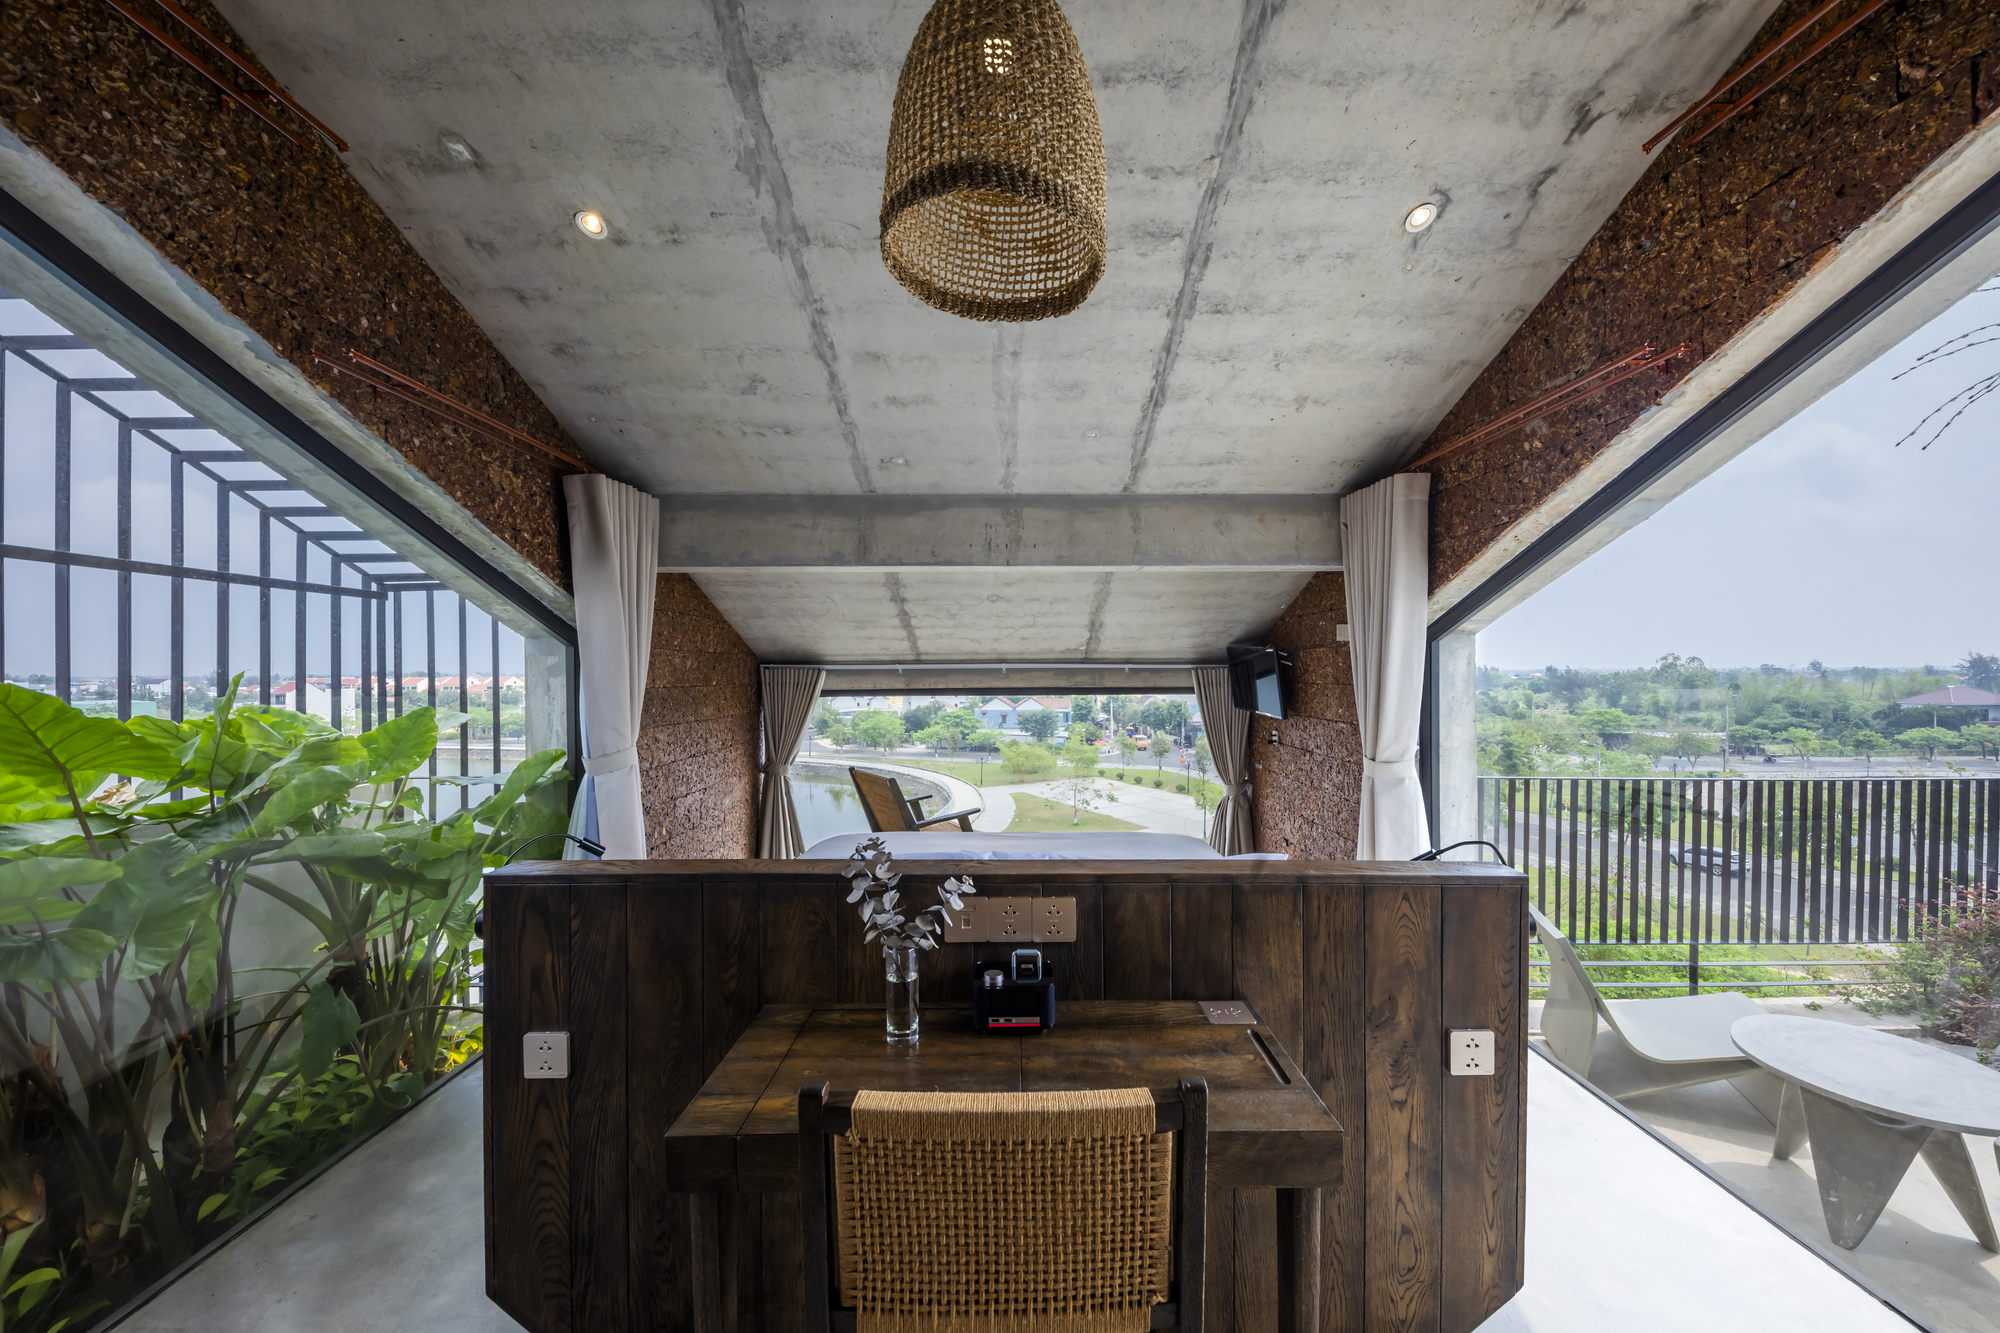 图片[3]|渔网连接悬浮水泥盒，Thalia 精品酒店 / Ho Khue Architects|ART-Arrakis | 建筑室内设计的创新与灵感